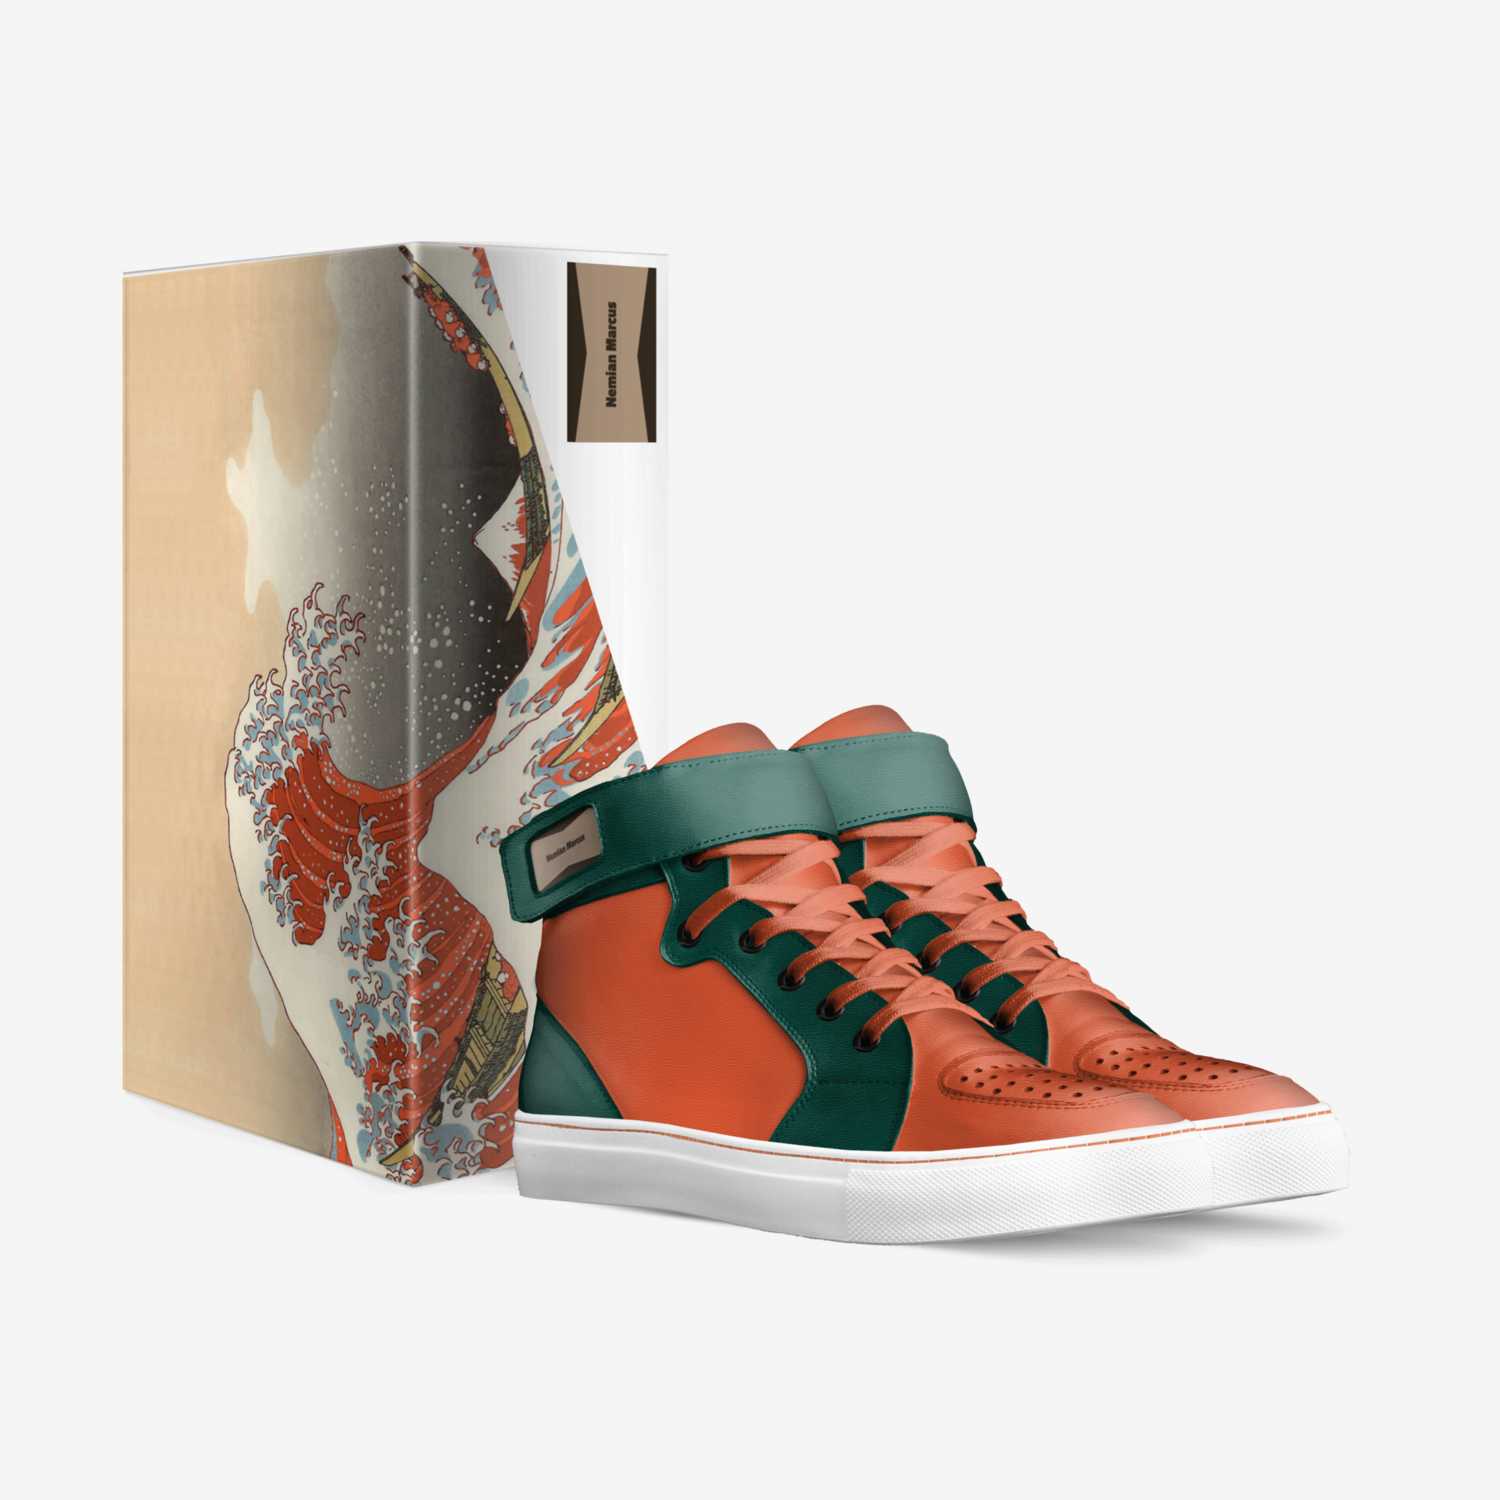 Kyra custom made in Italy shoes by Makyra Scott | Box view